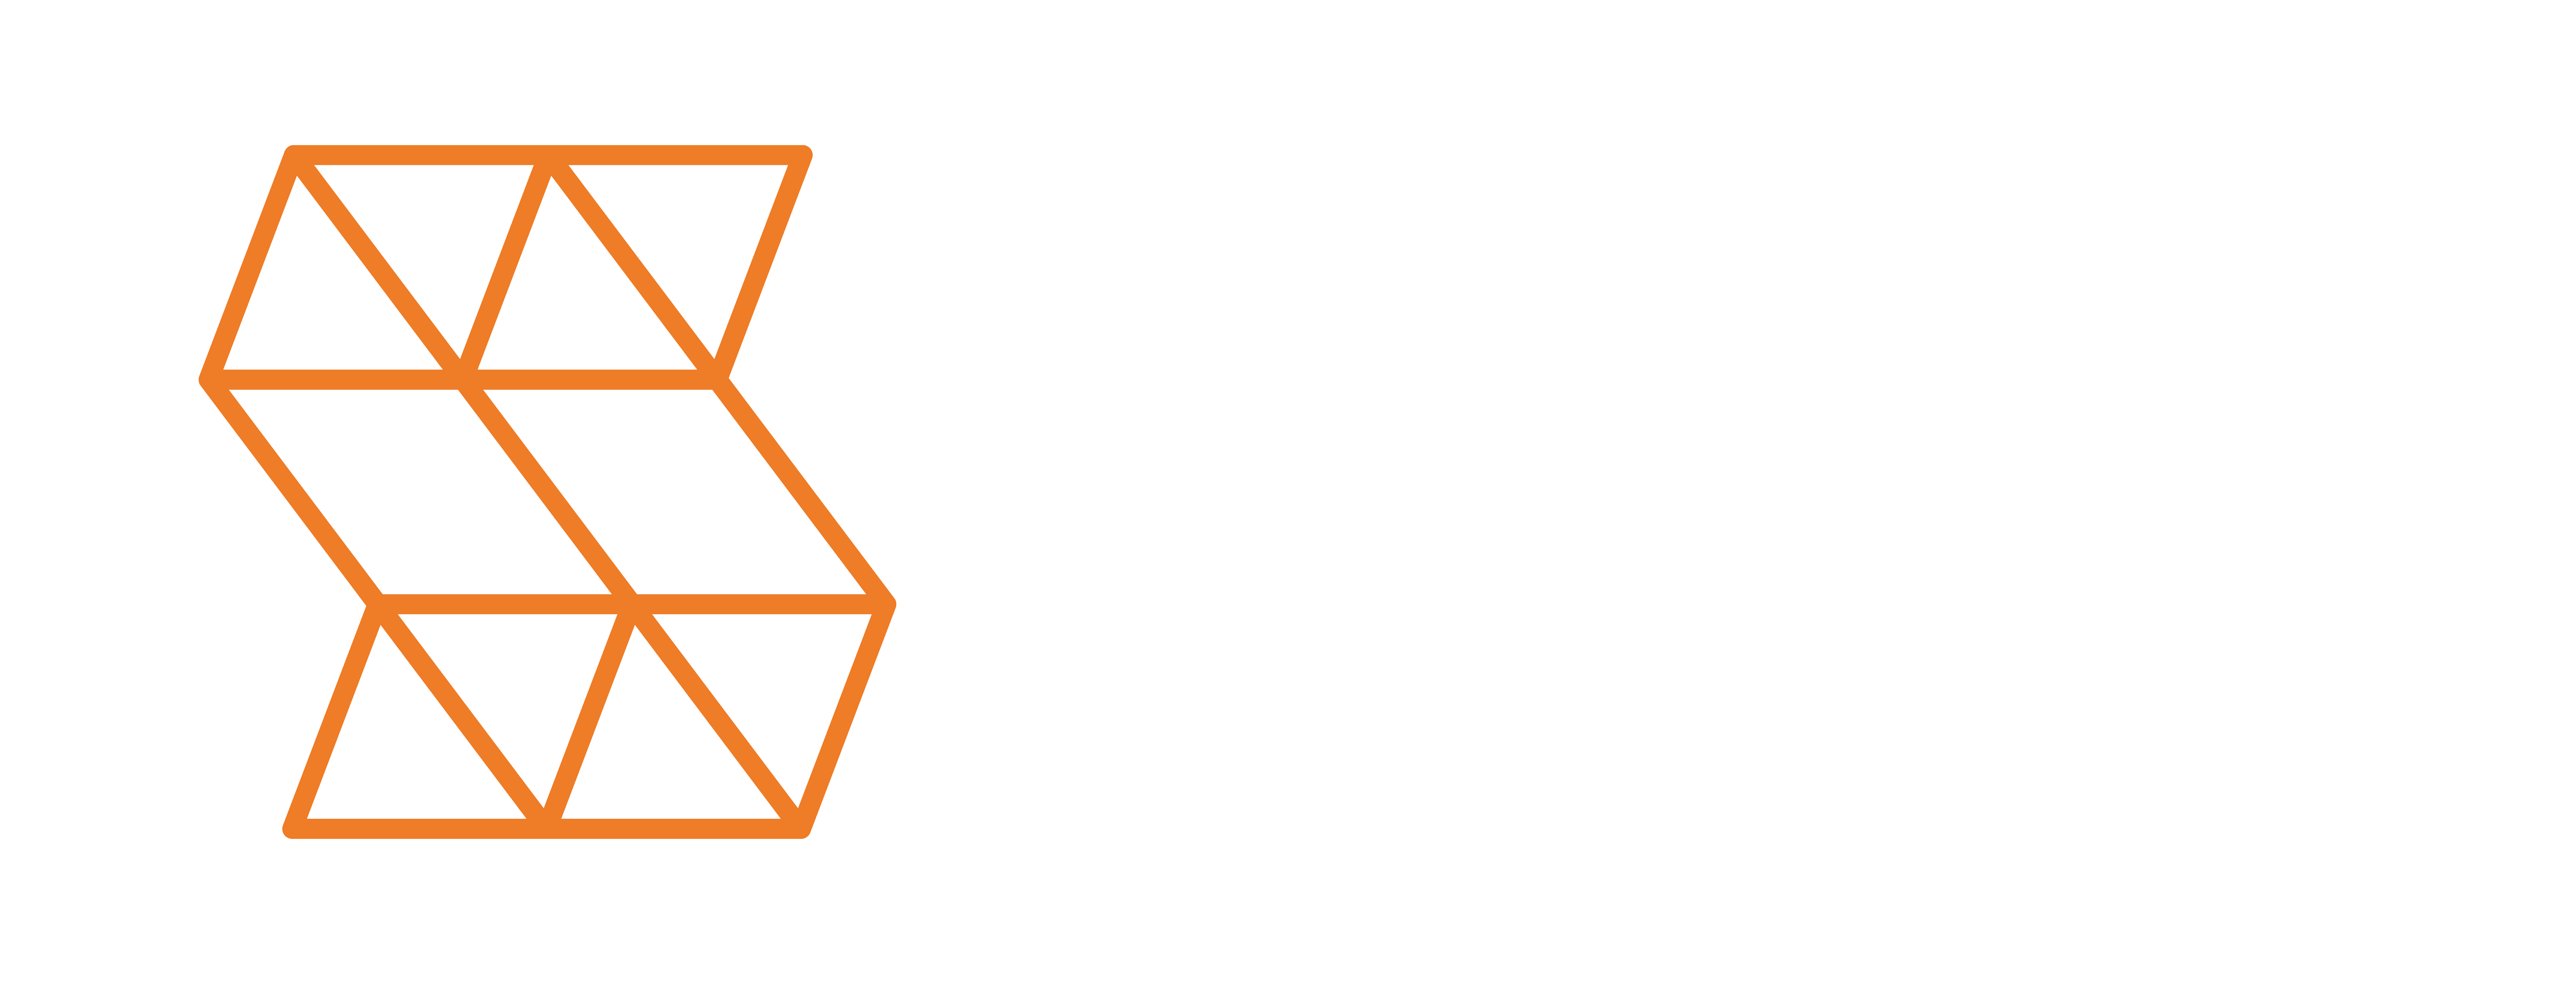 Logotipo - Soloz Industrial